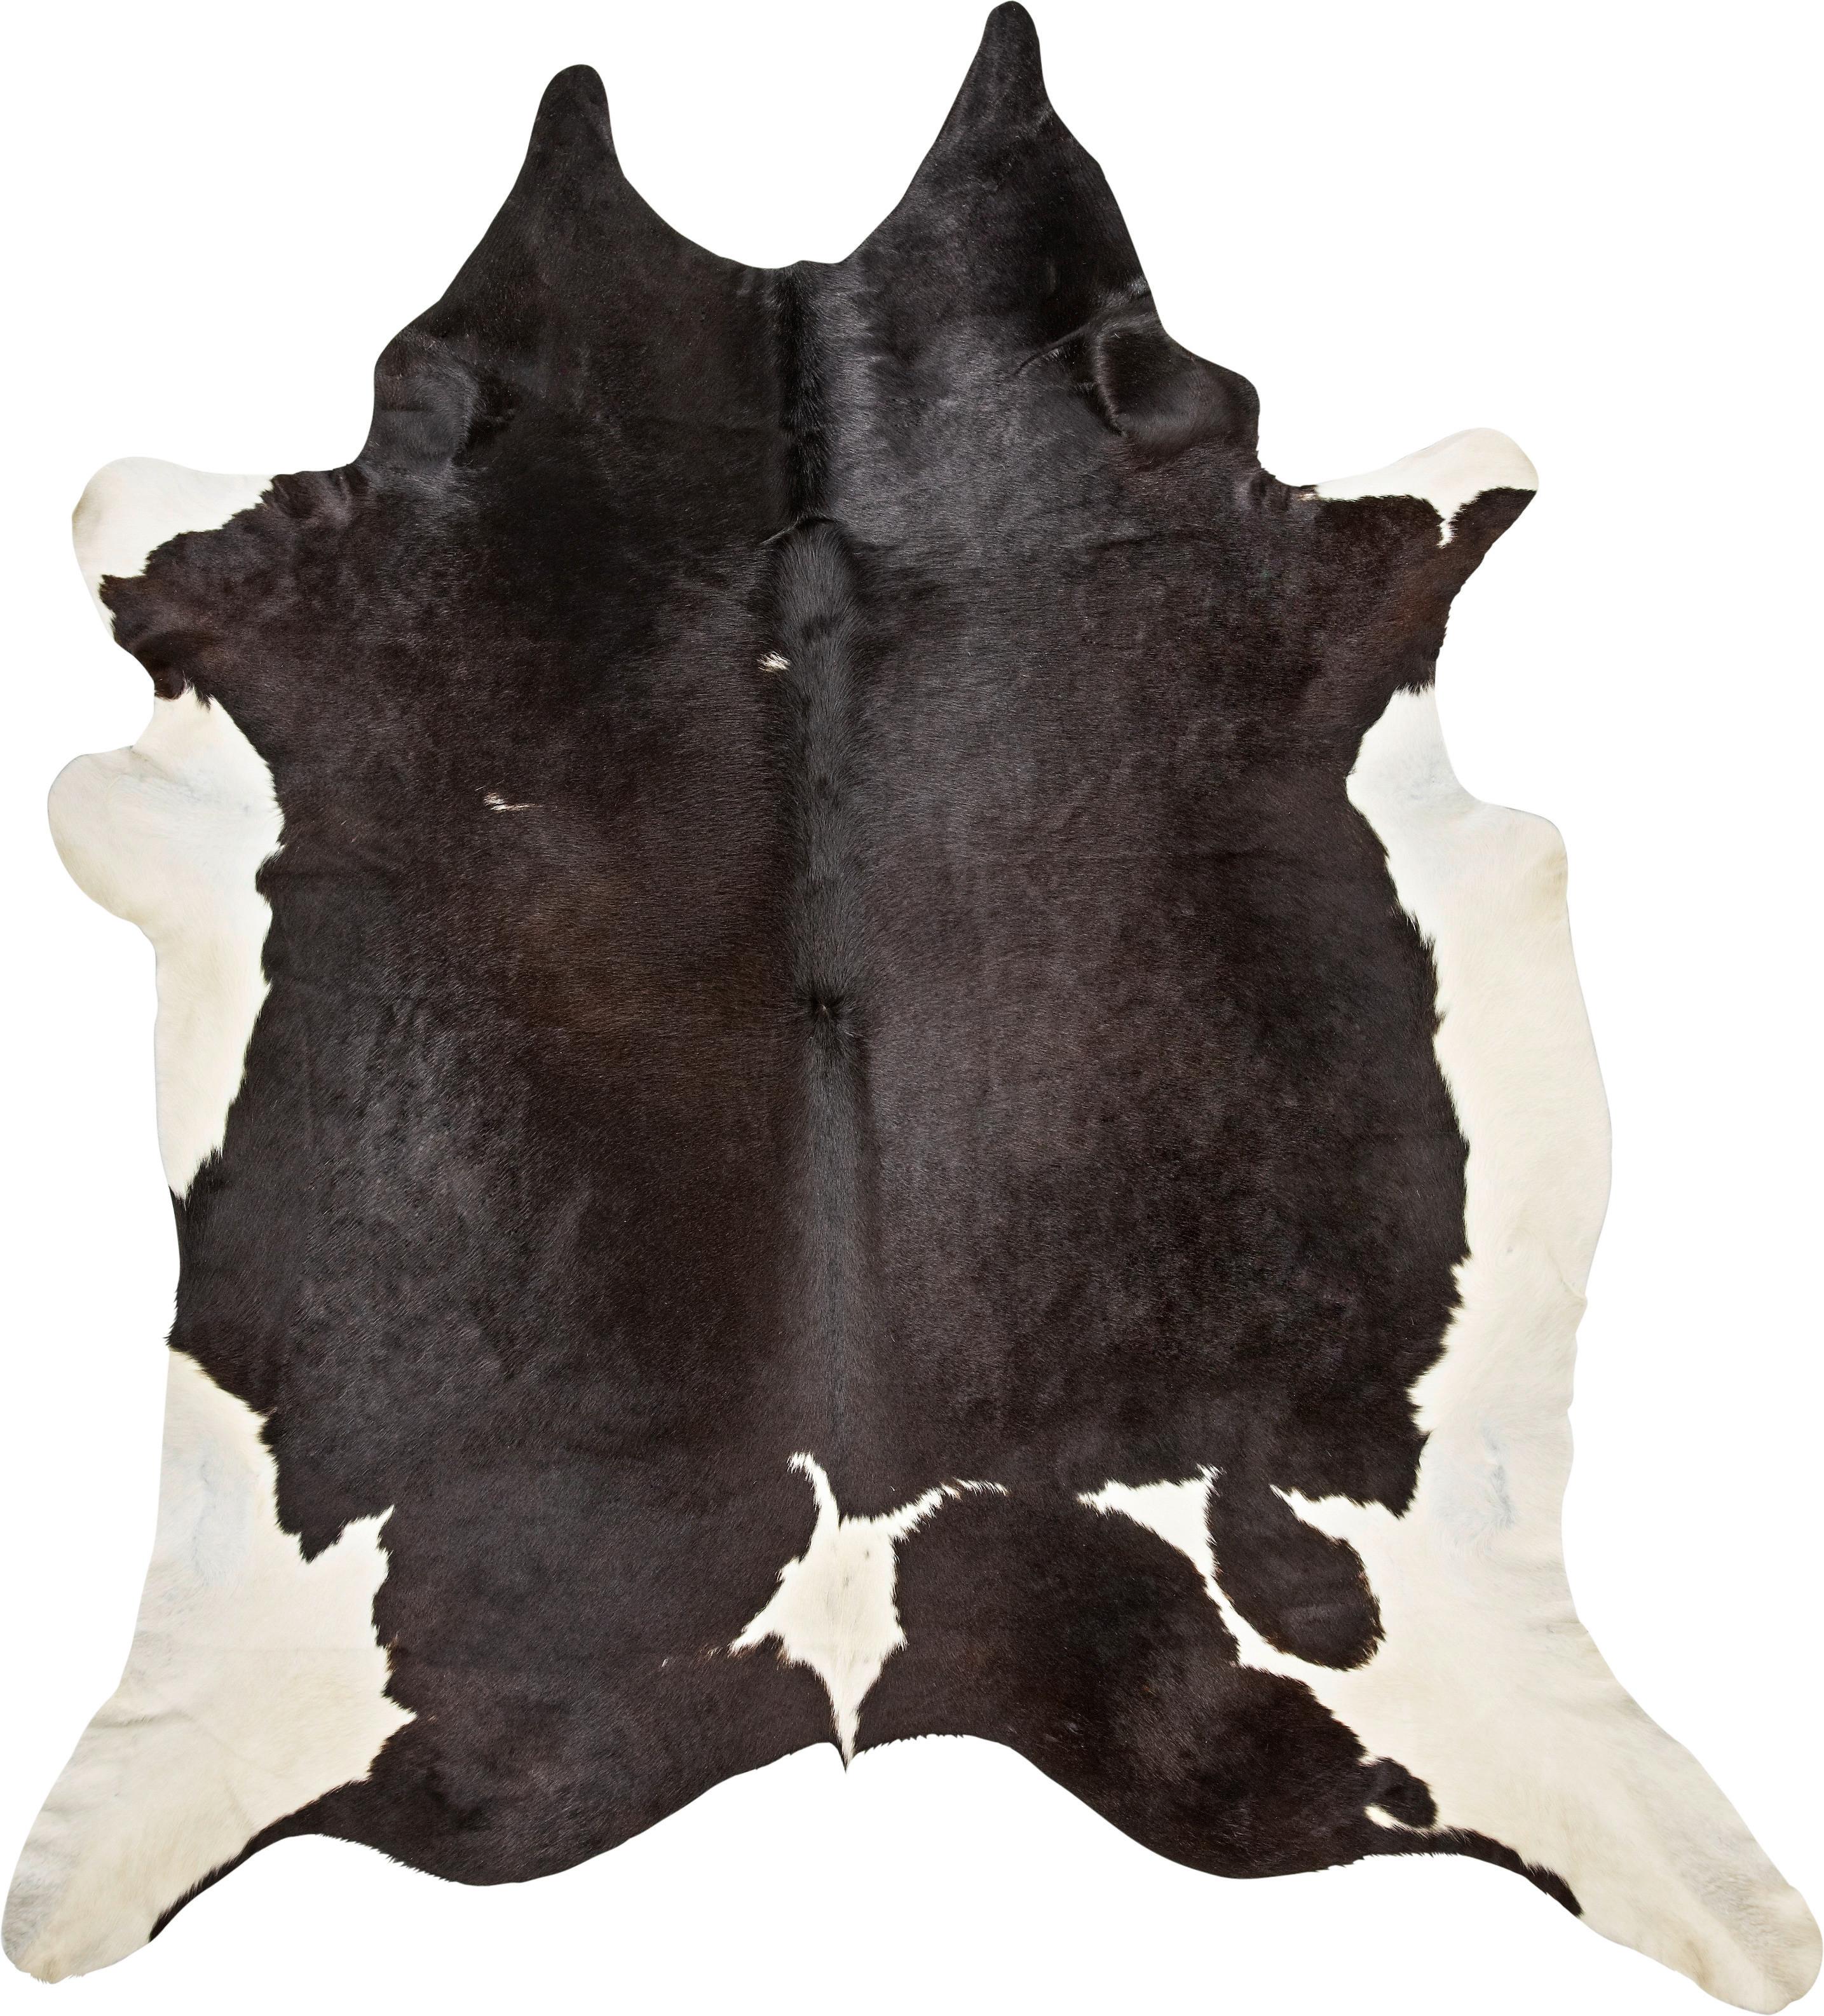 Hovězí Kůže Christoph, 2-4,5m2 - černá/hnědá, Moderní, textil - Modern Living